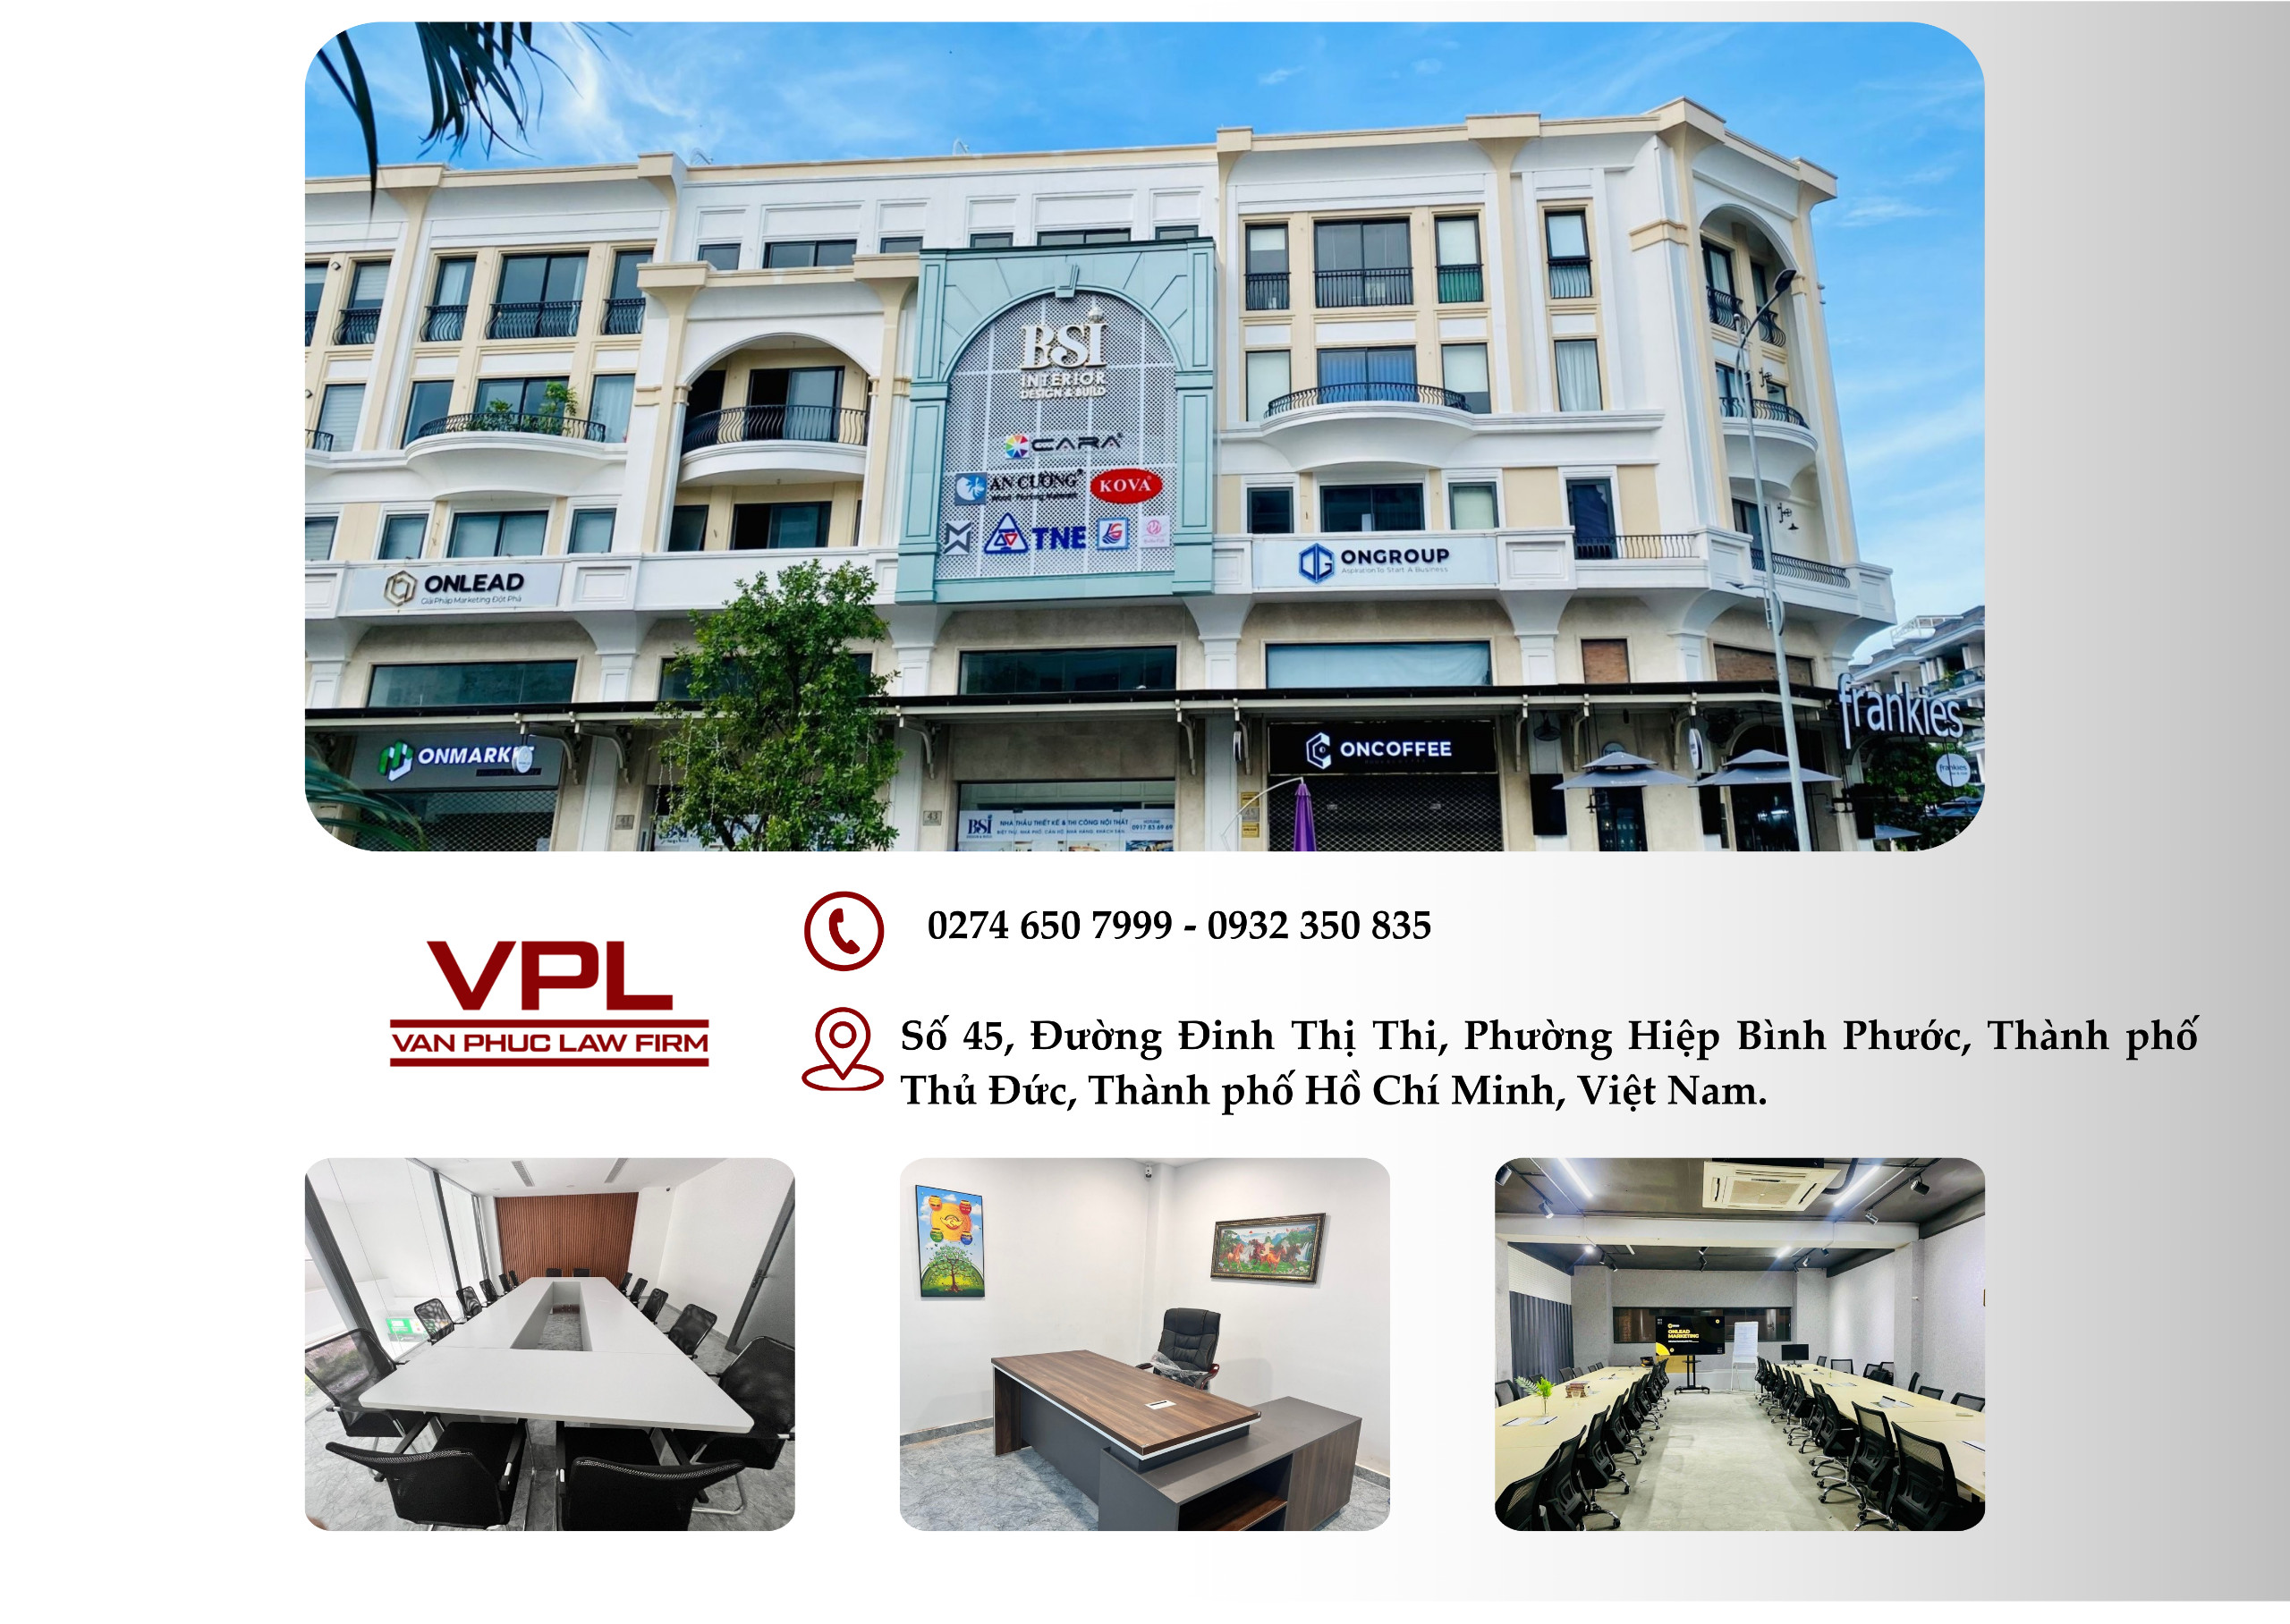 Địa chỉ văn phòng mới của VPL